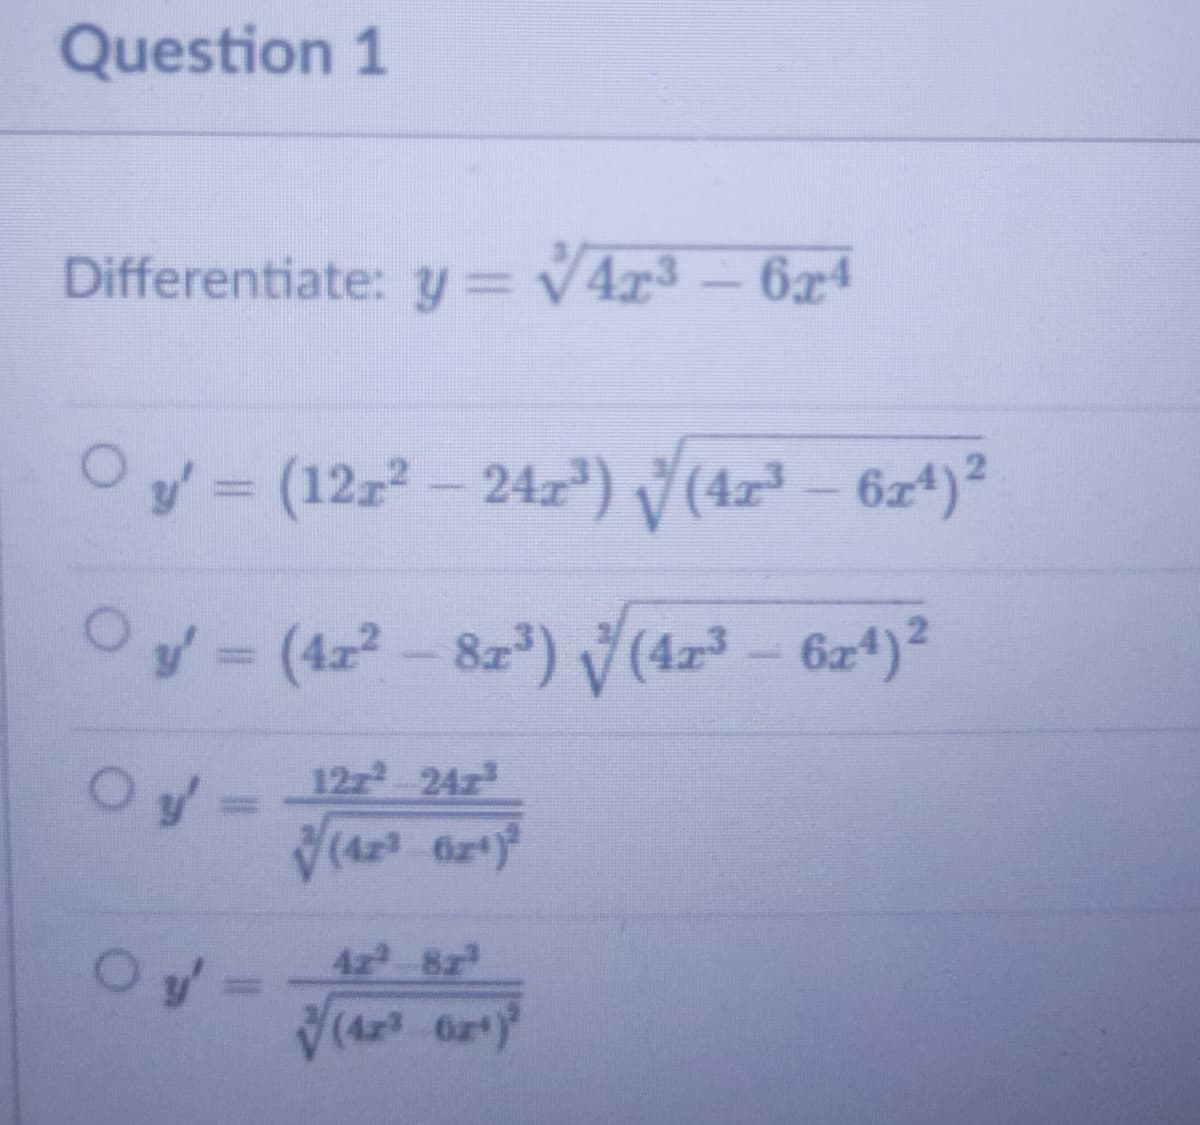 Question 1
Differentiate: y= v4x3
– 6xª
Oy = (12z- 24r") (4x² – 6z4)²
Oy= (4z- 8z) (423 - 6z4)?
12z 24z
4z 8z
(4x 6z)
